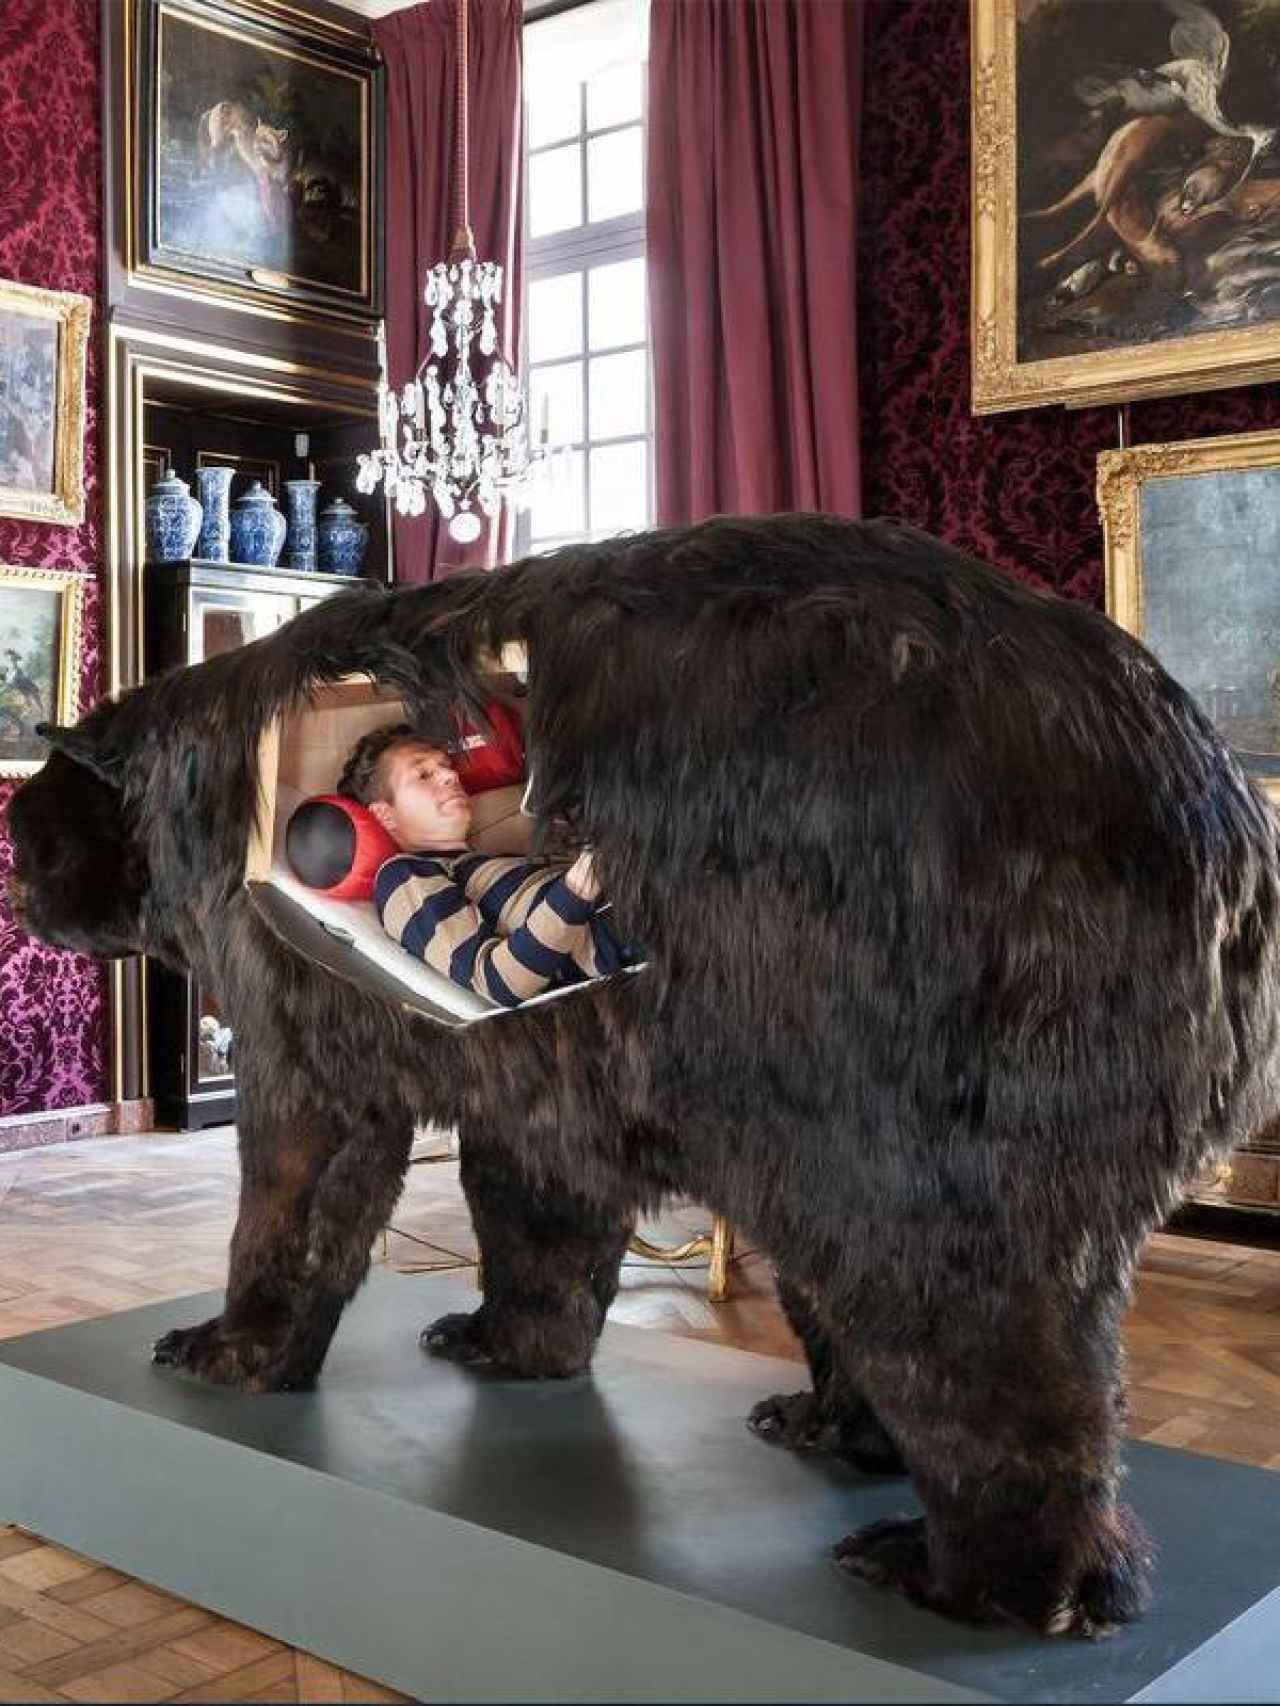 El artista en el oso.